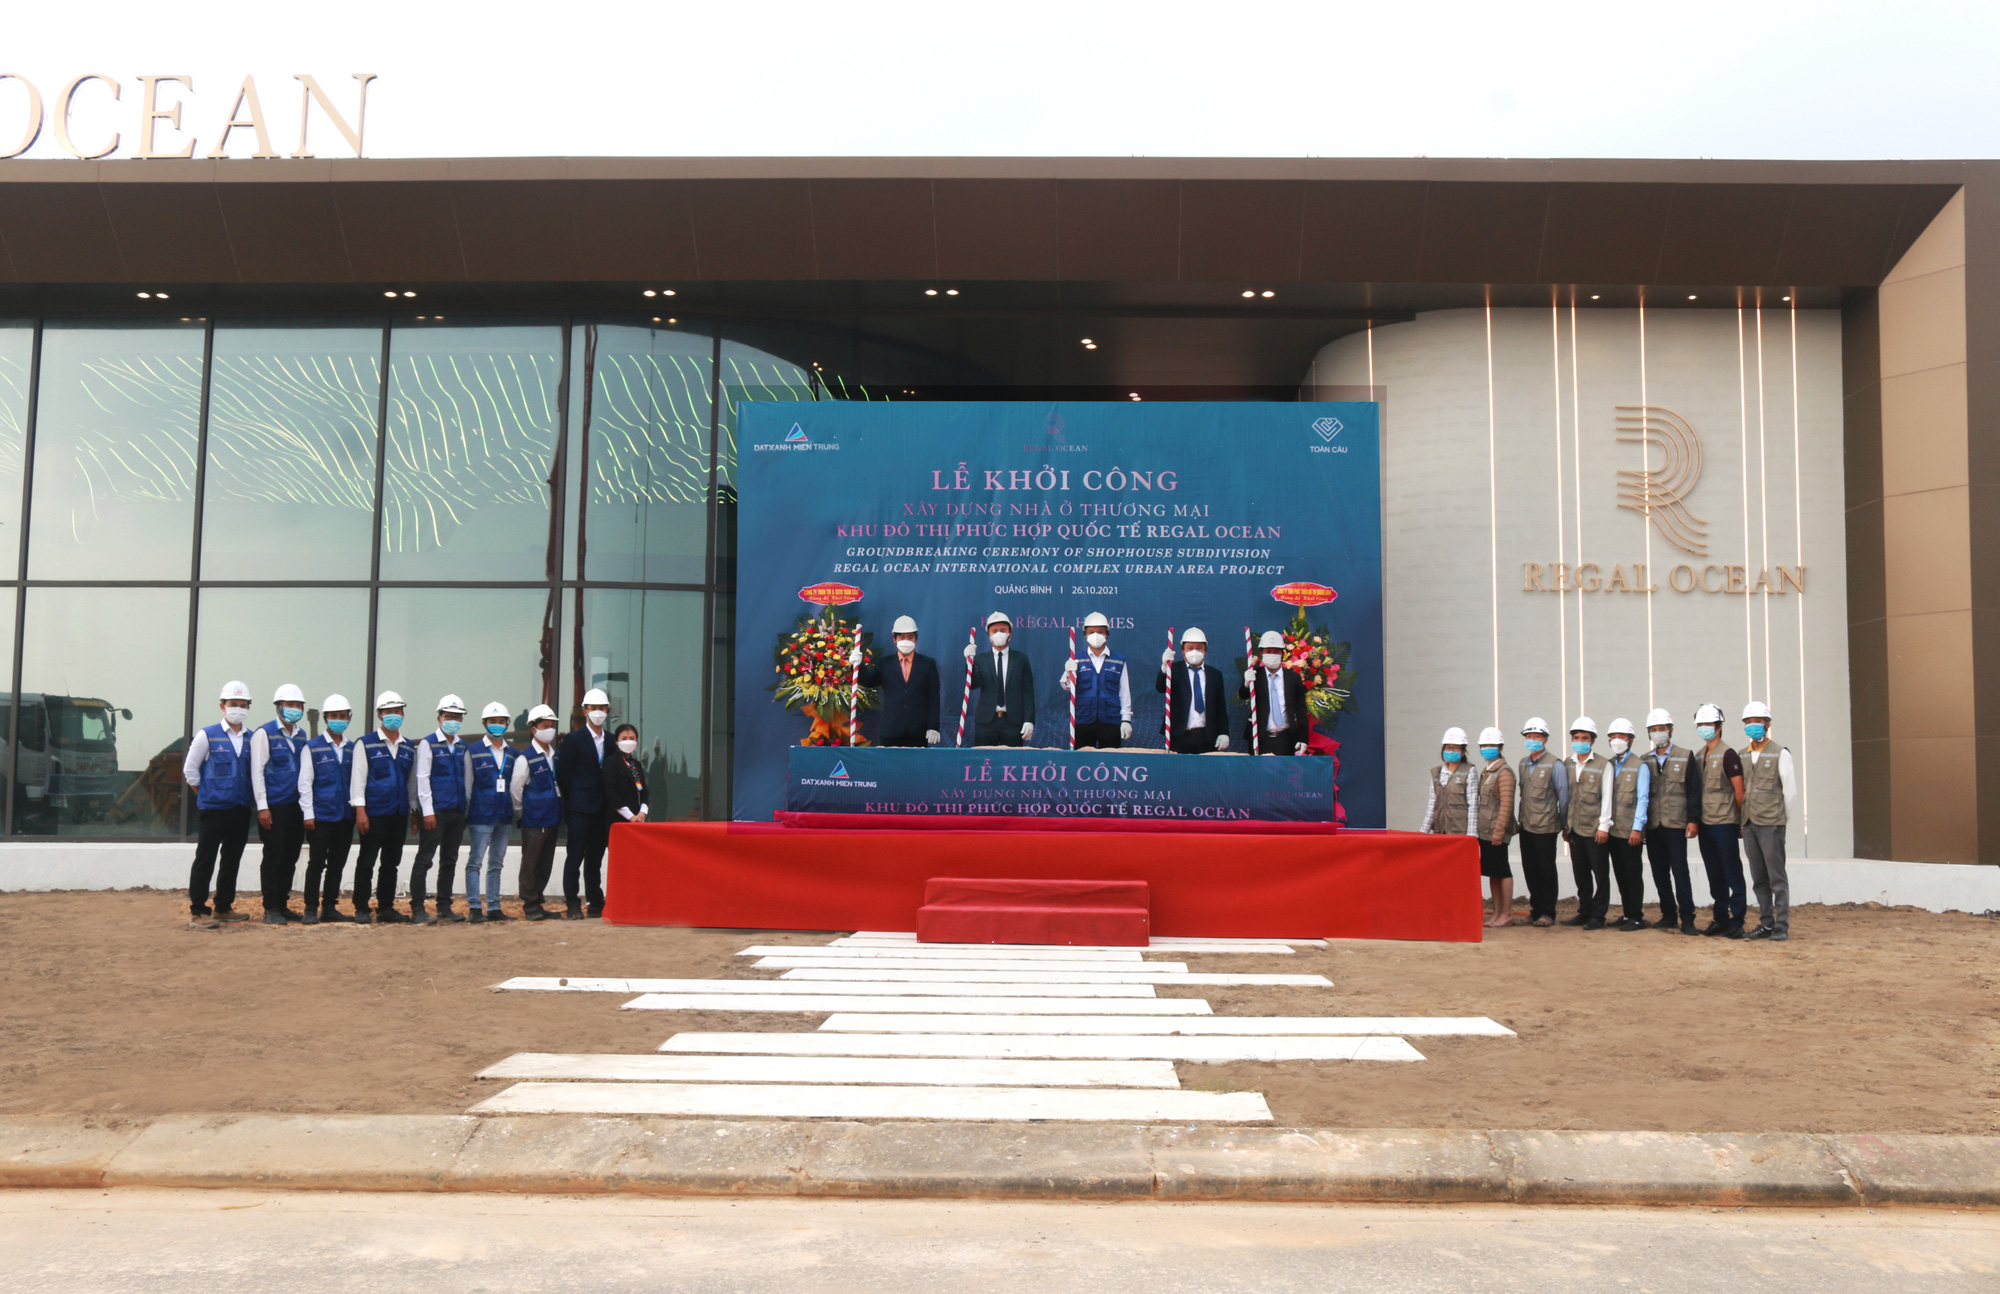 Đất Xanh Miền Trung khởi công xây dựng khu nhà ở thương mại Regal Ocean tại Quảng Bình - Ảnh 1.